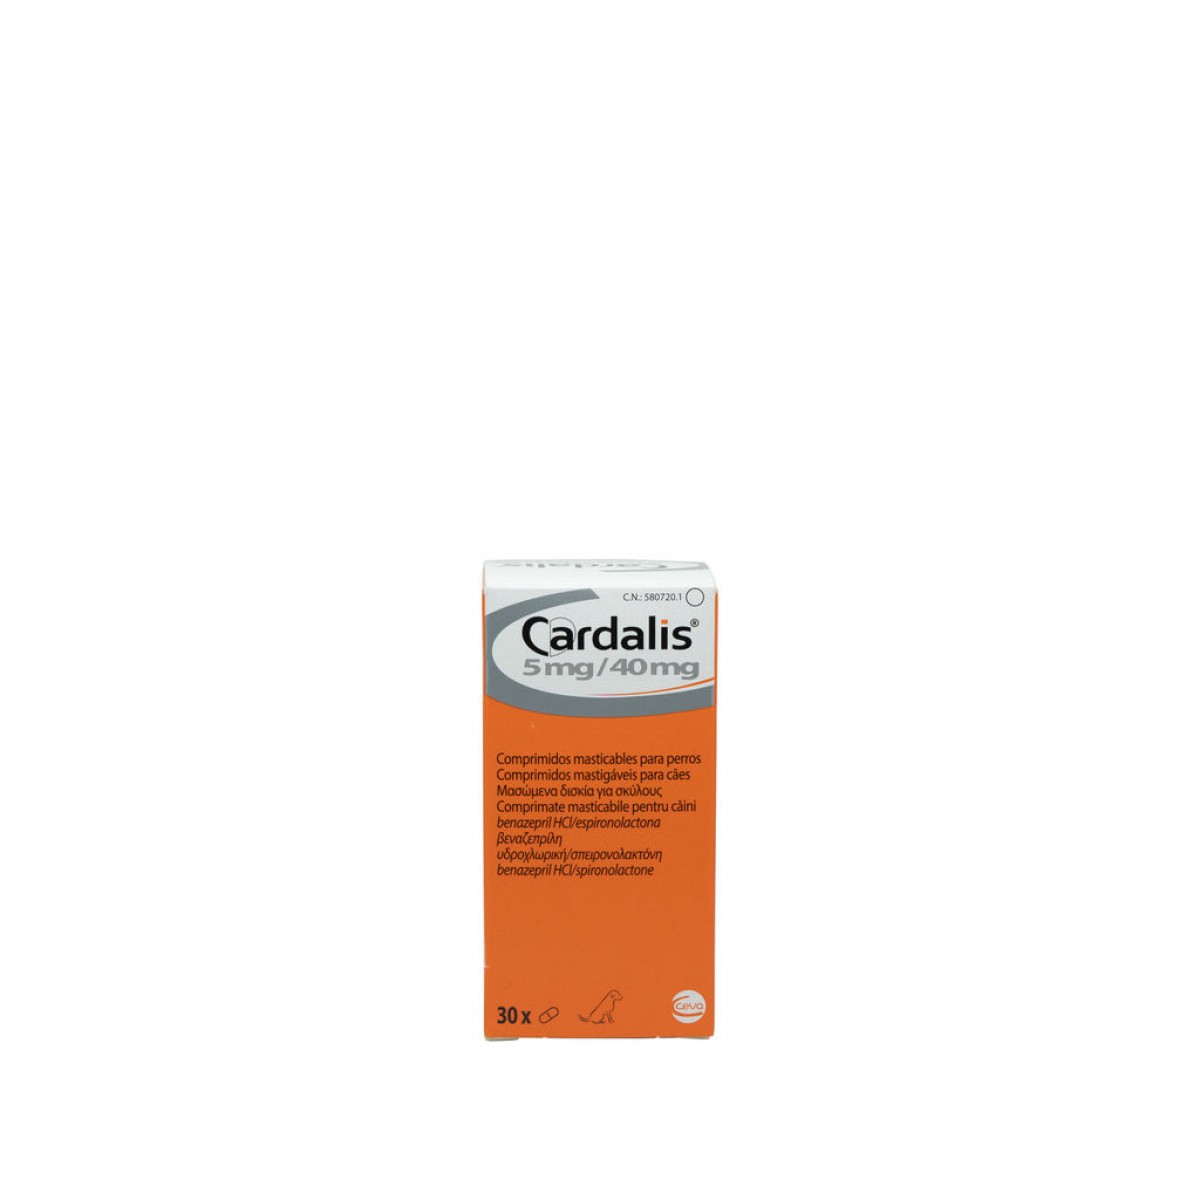 CARDALIS pentru caini 5 mg / 40 mg 30 tablete